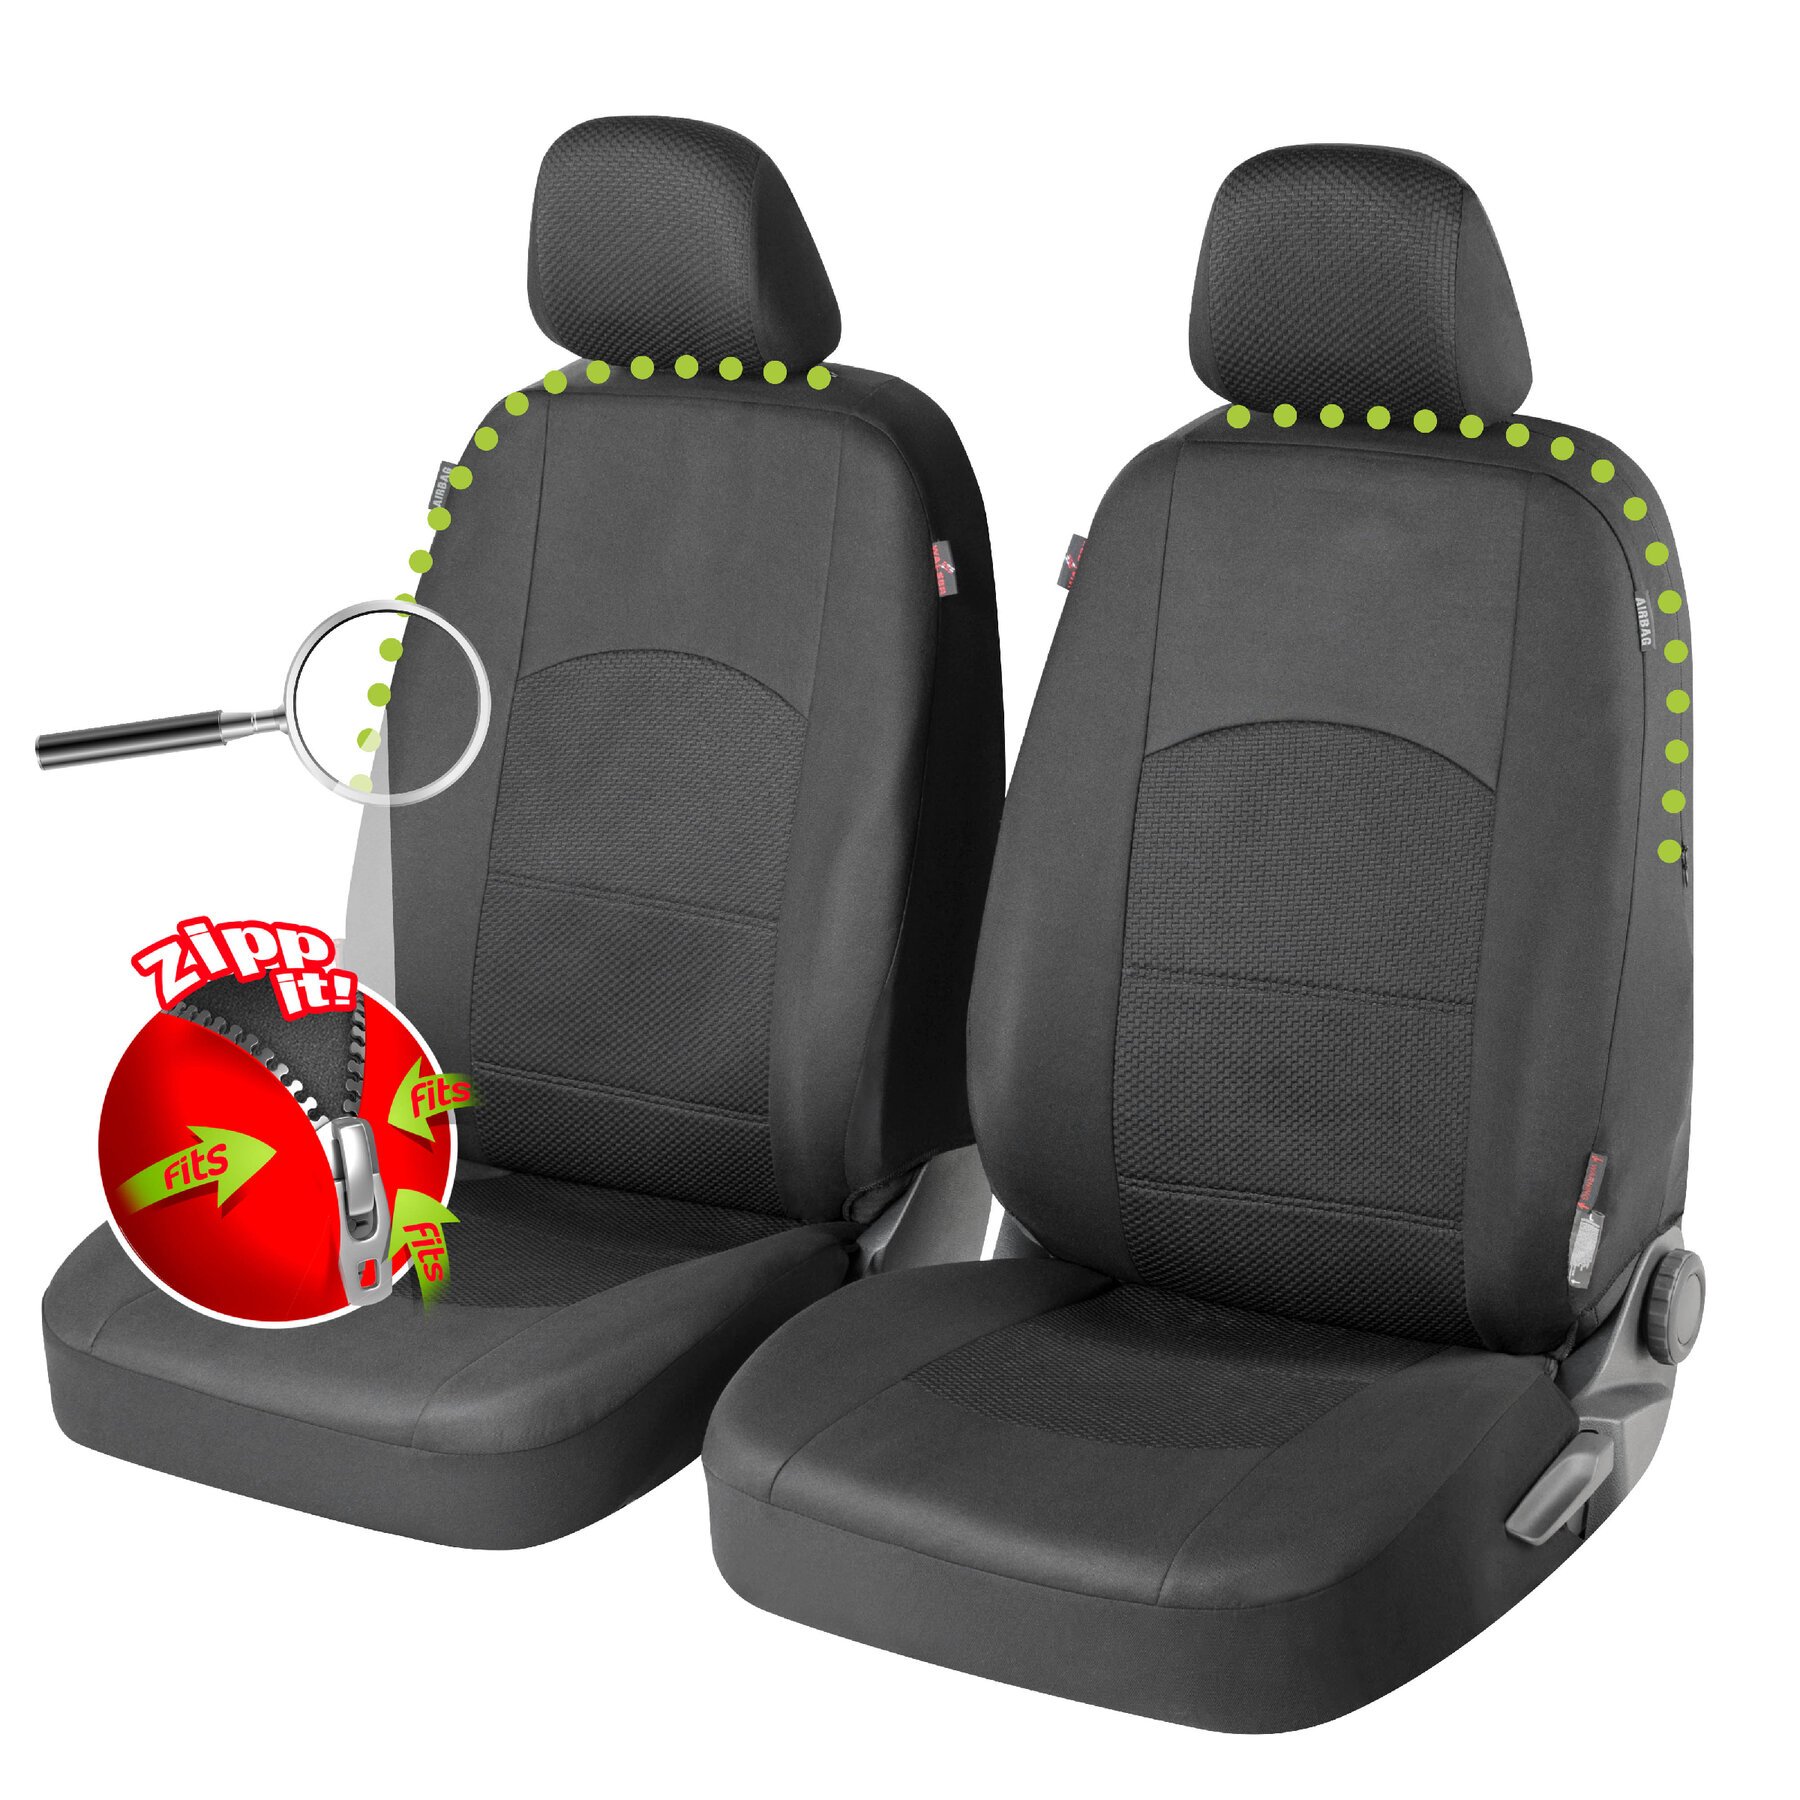 Auto stoelbeschermer Derby met Zipper ZIPP-IT Premium Autostoelhoes, 2 stoelbeschermer voor voorstoel zwart